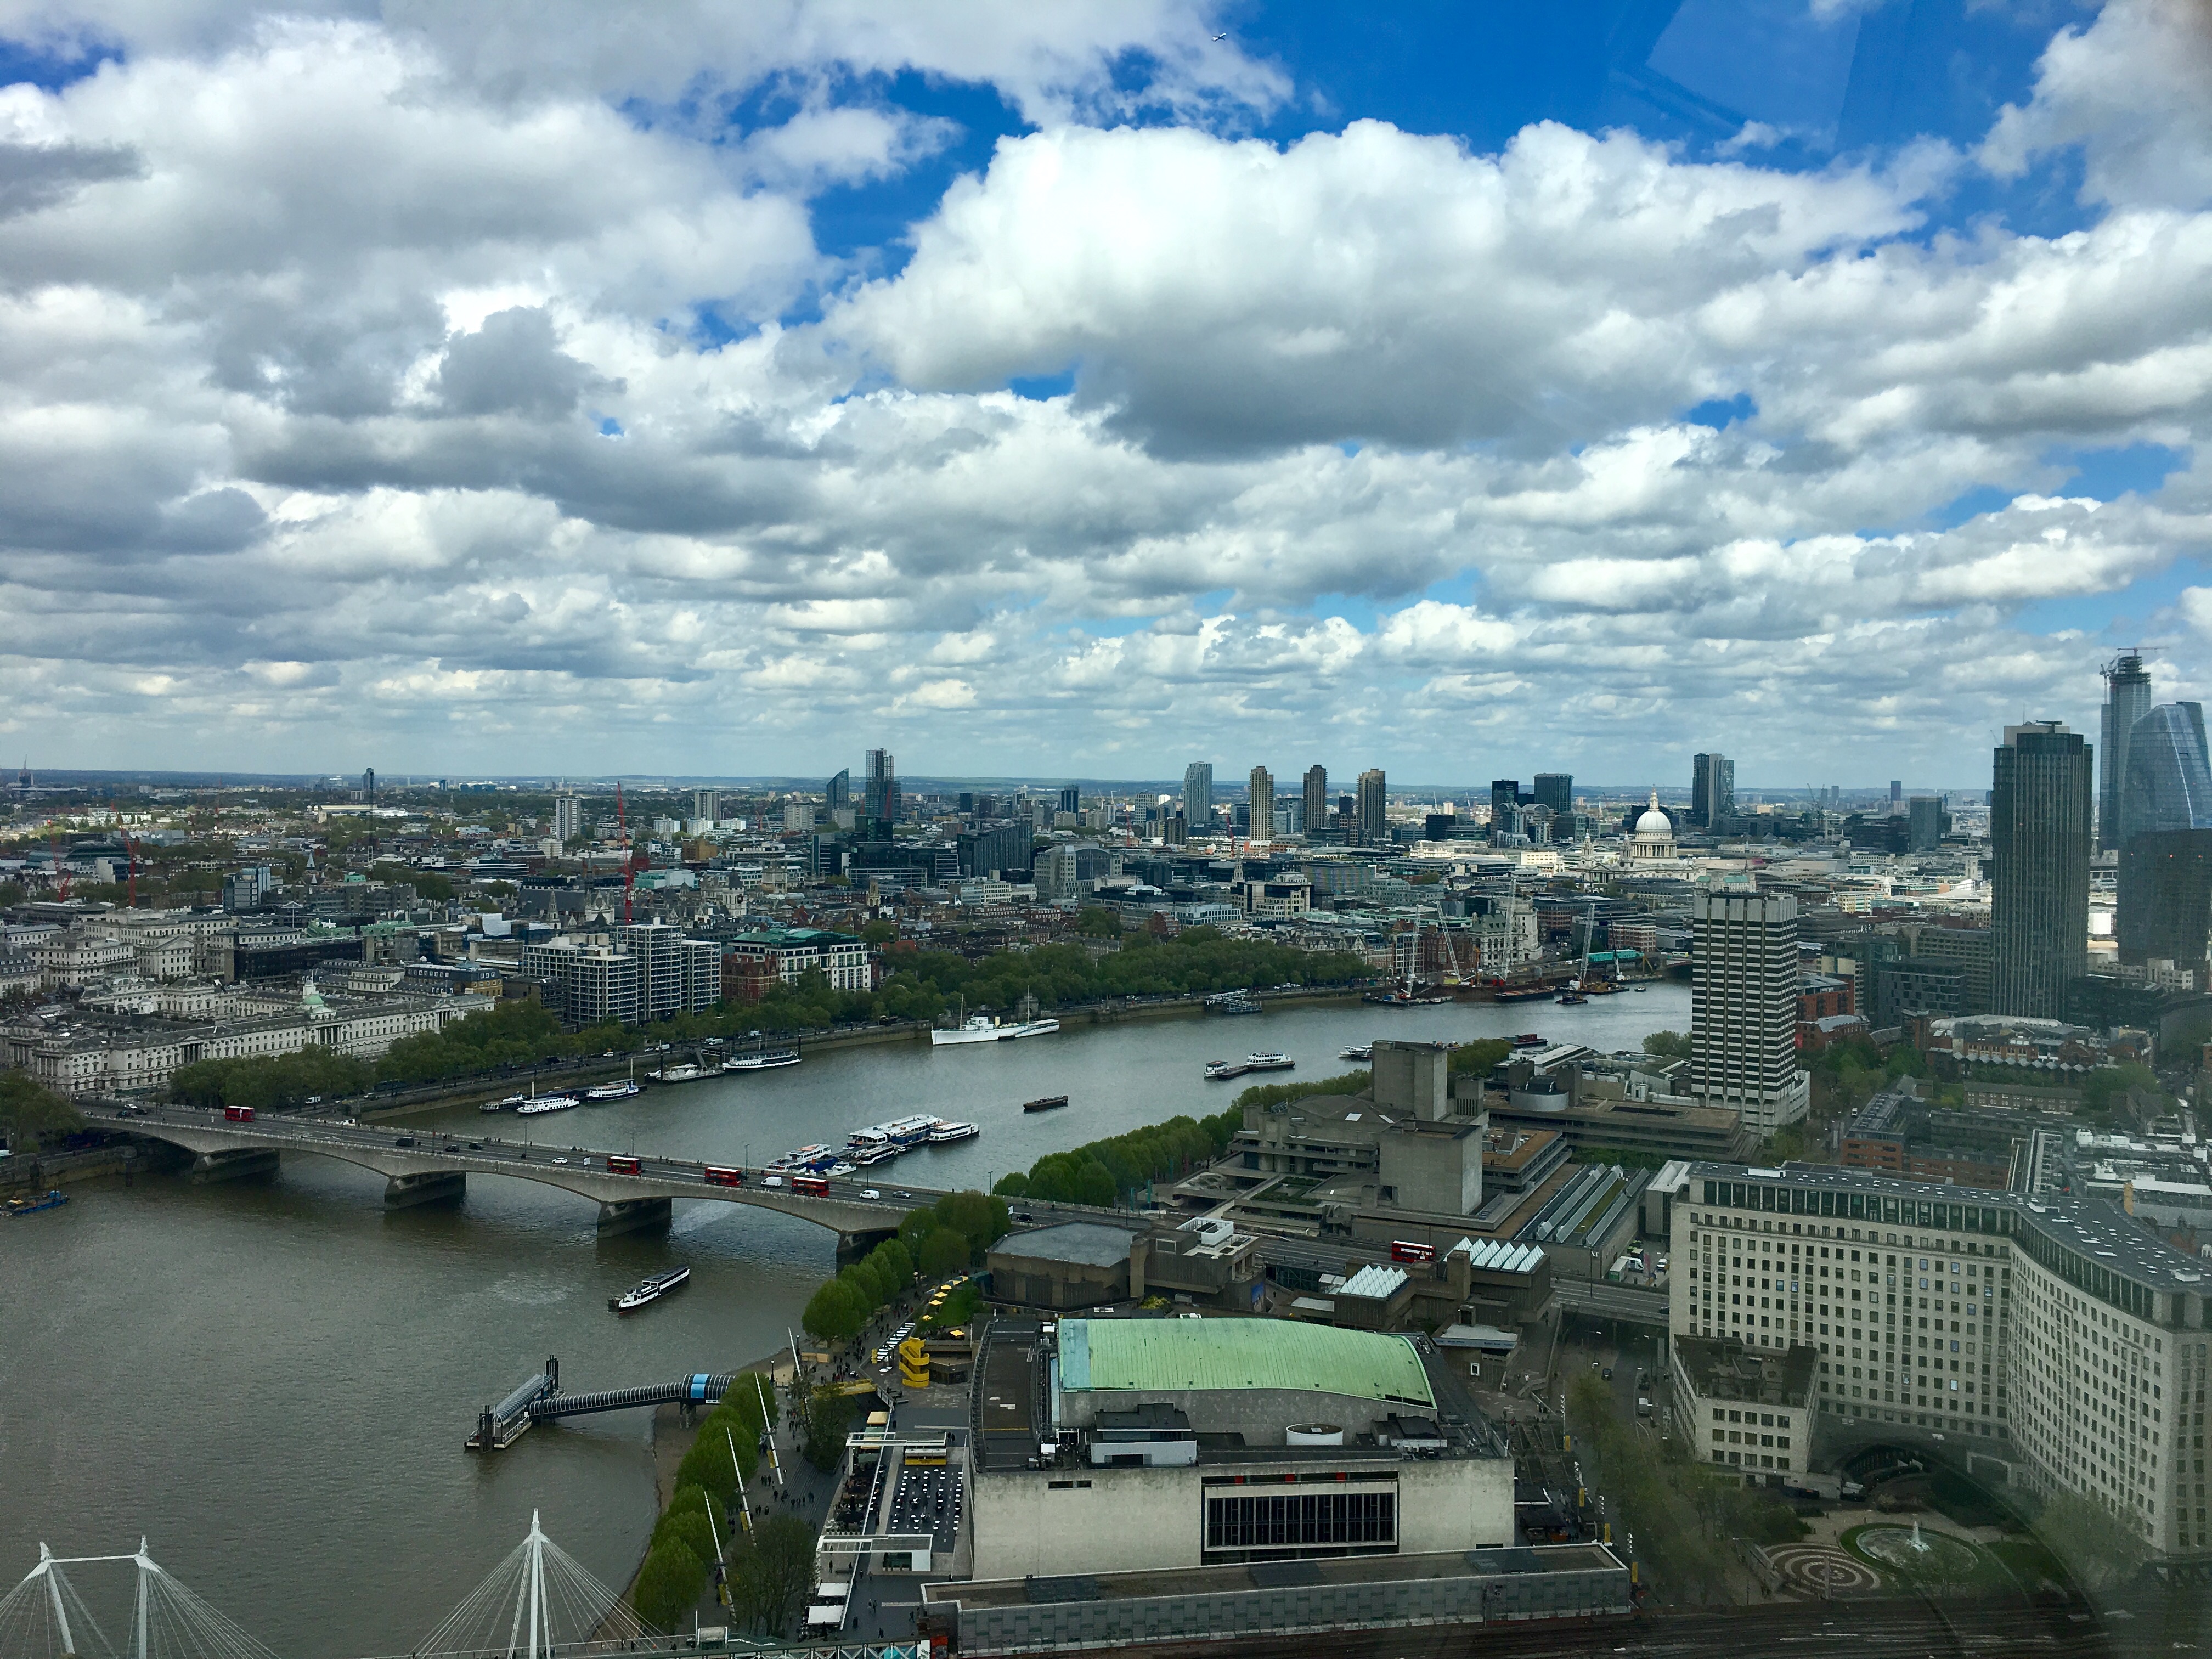 London view